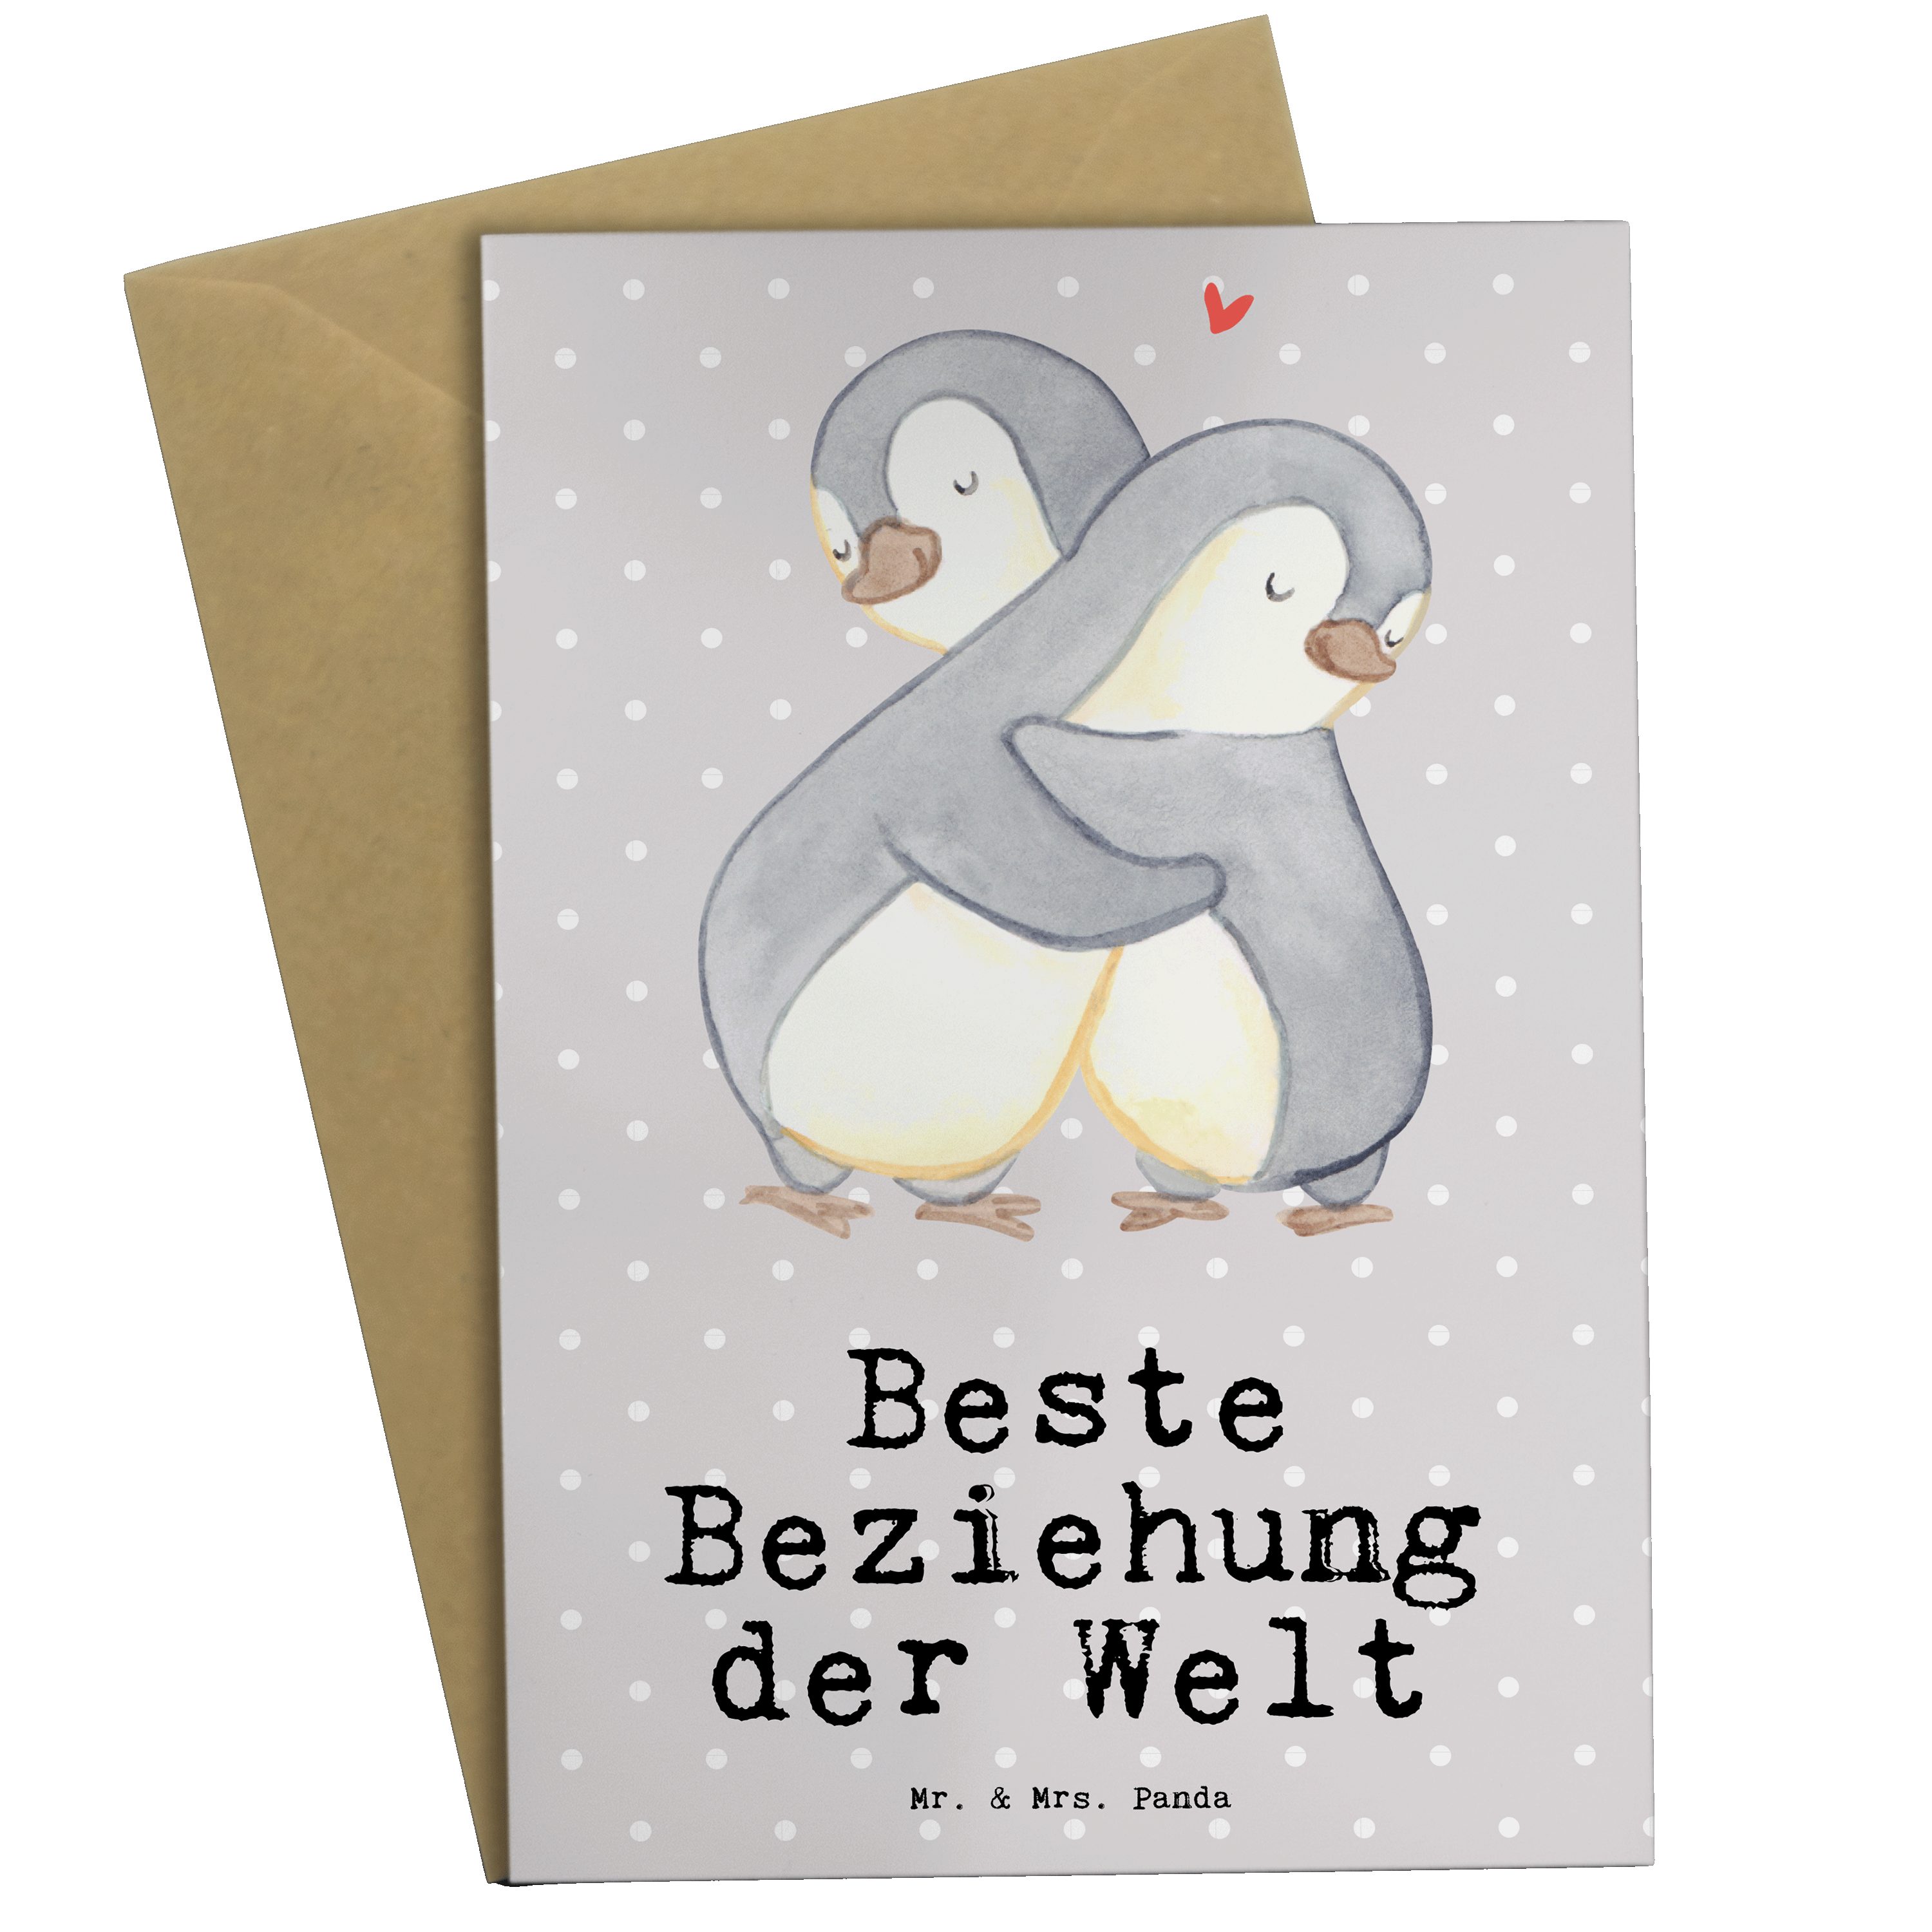 Mr. & Mrs. Panda Grußkarte Pinguin Beste Beziehung der Welt - Grau Pastell - Geschenk, Verlieb